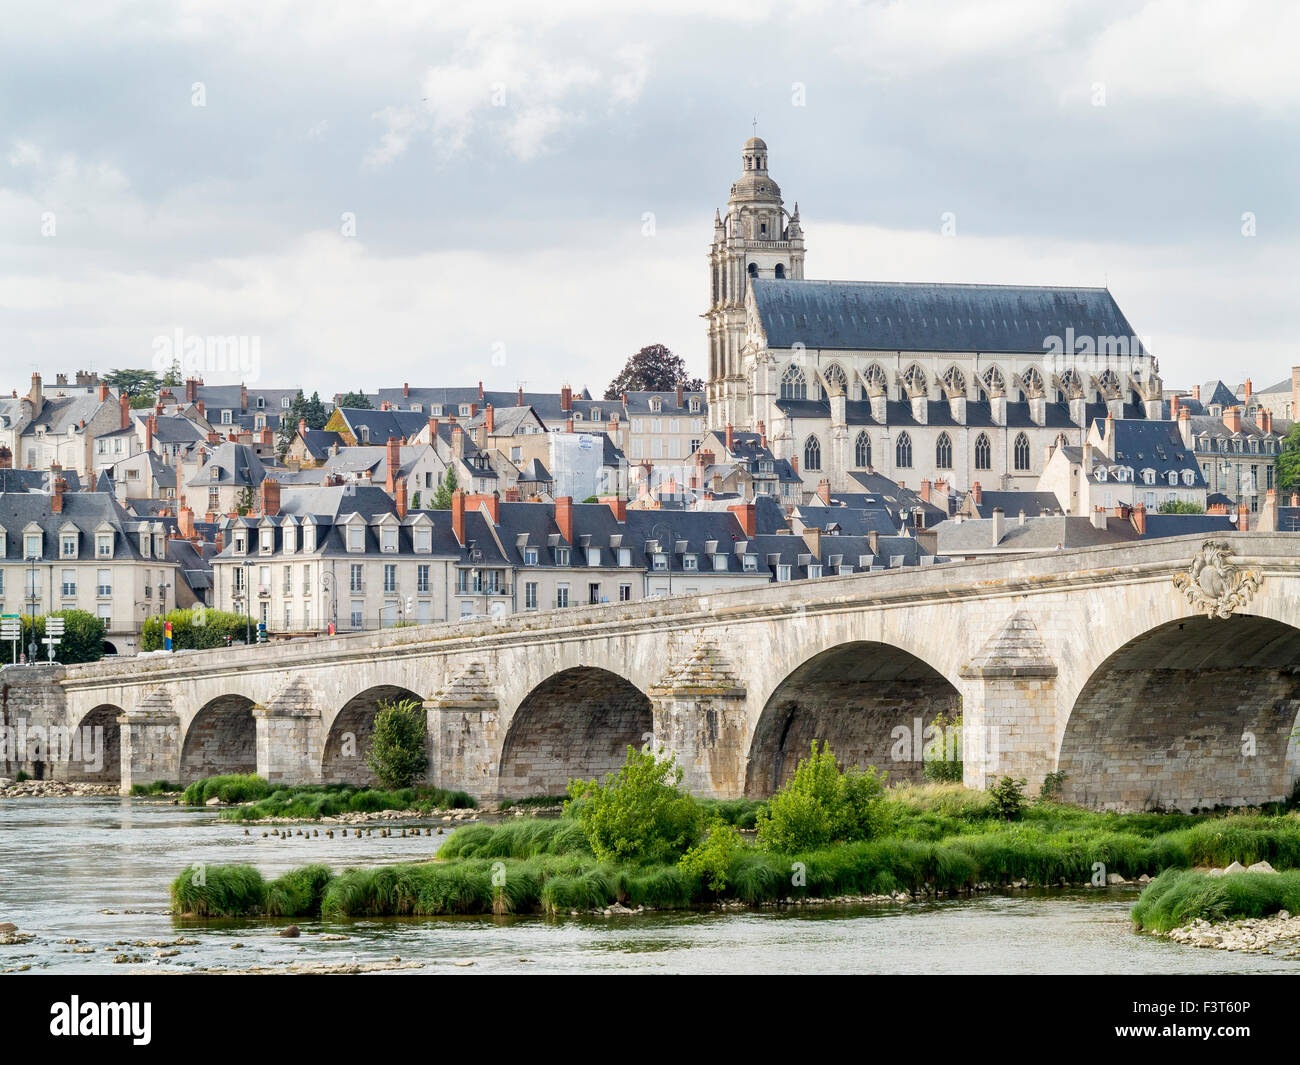 Die Architektur des Stadtzentrums an der Loire-Tal Stadt Blois an der Loire in Frankreich. Stockfoto